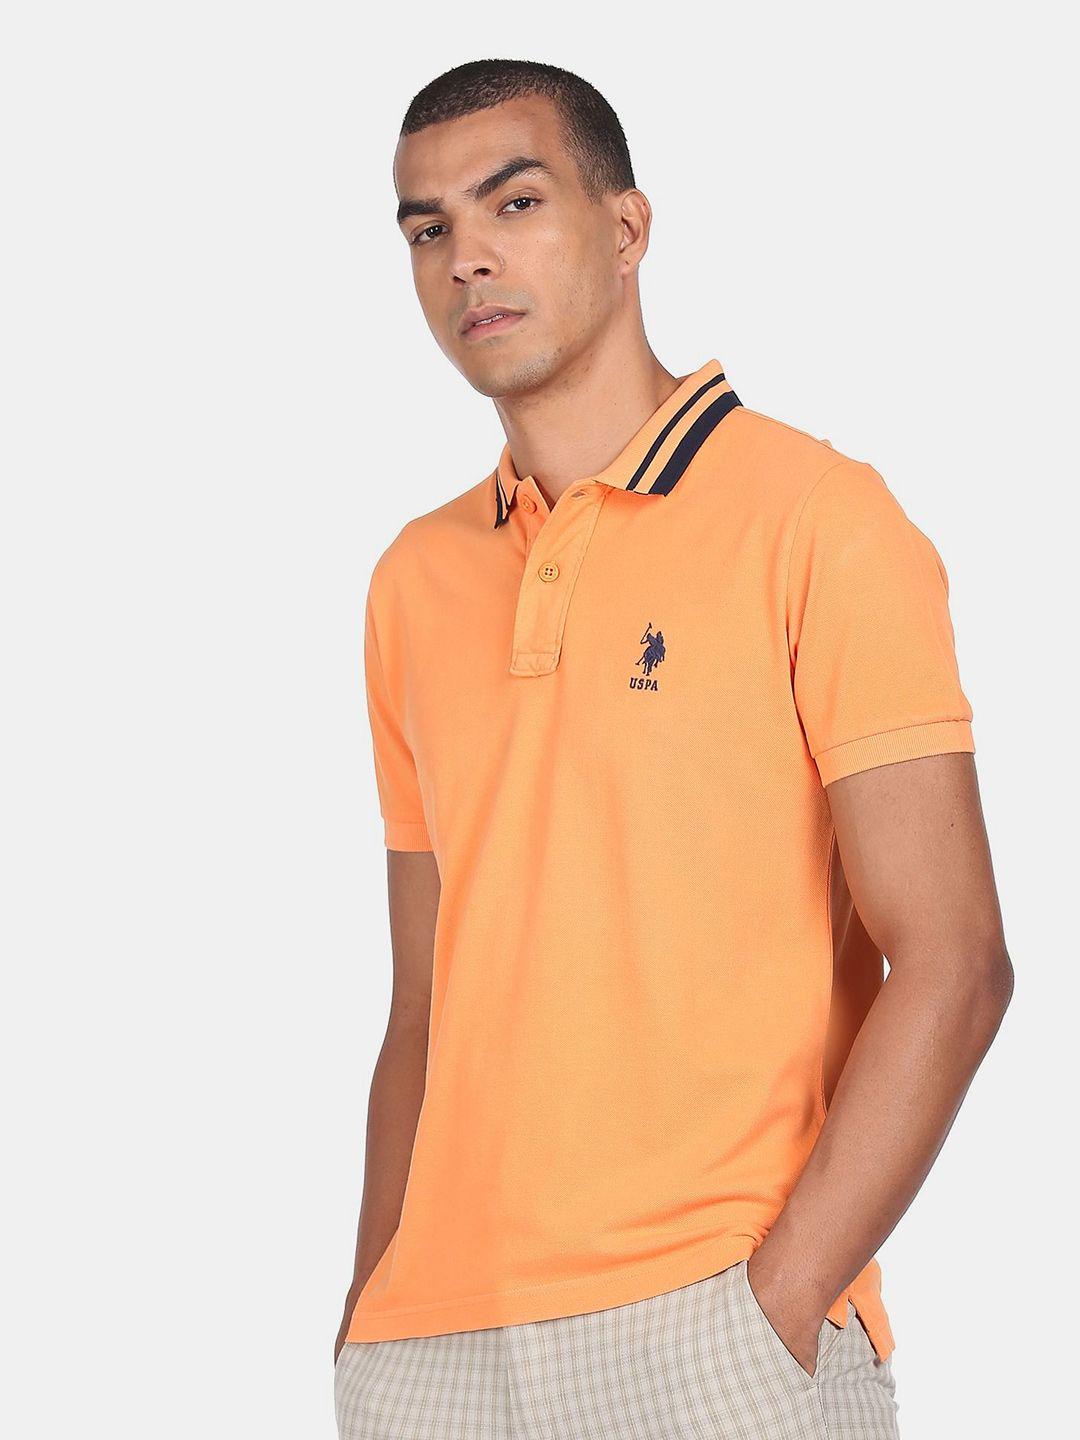 u s polo assn men orange polo collar 100% cotton t-shirt